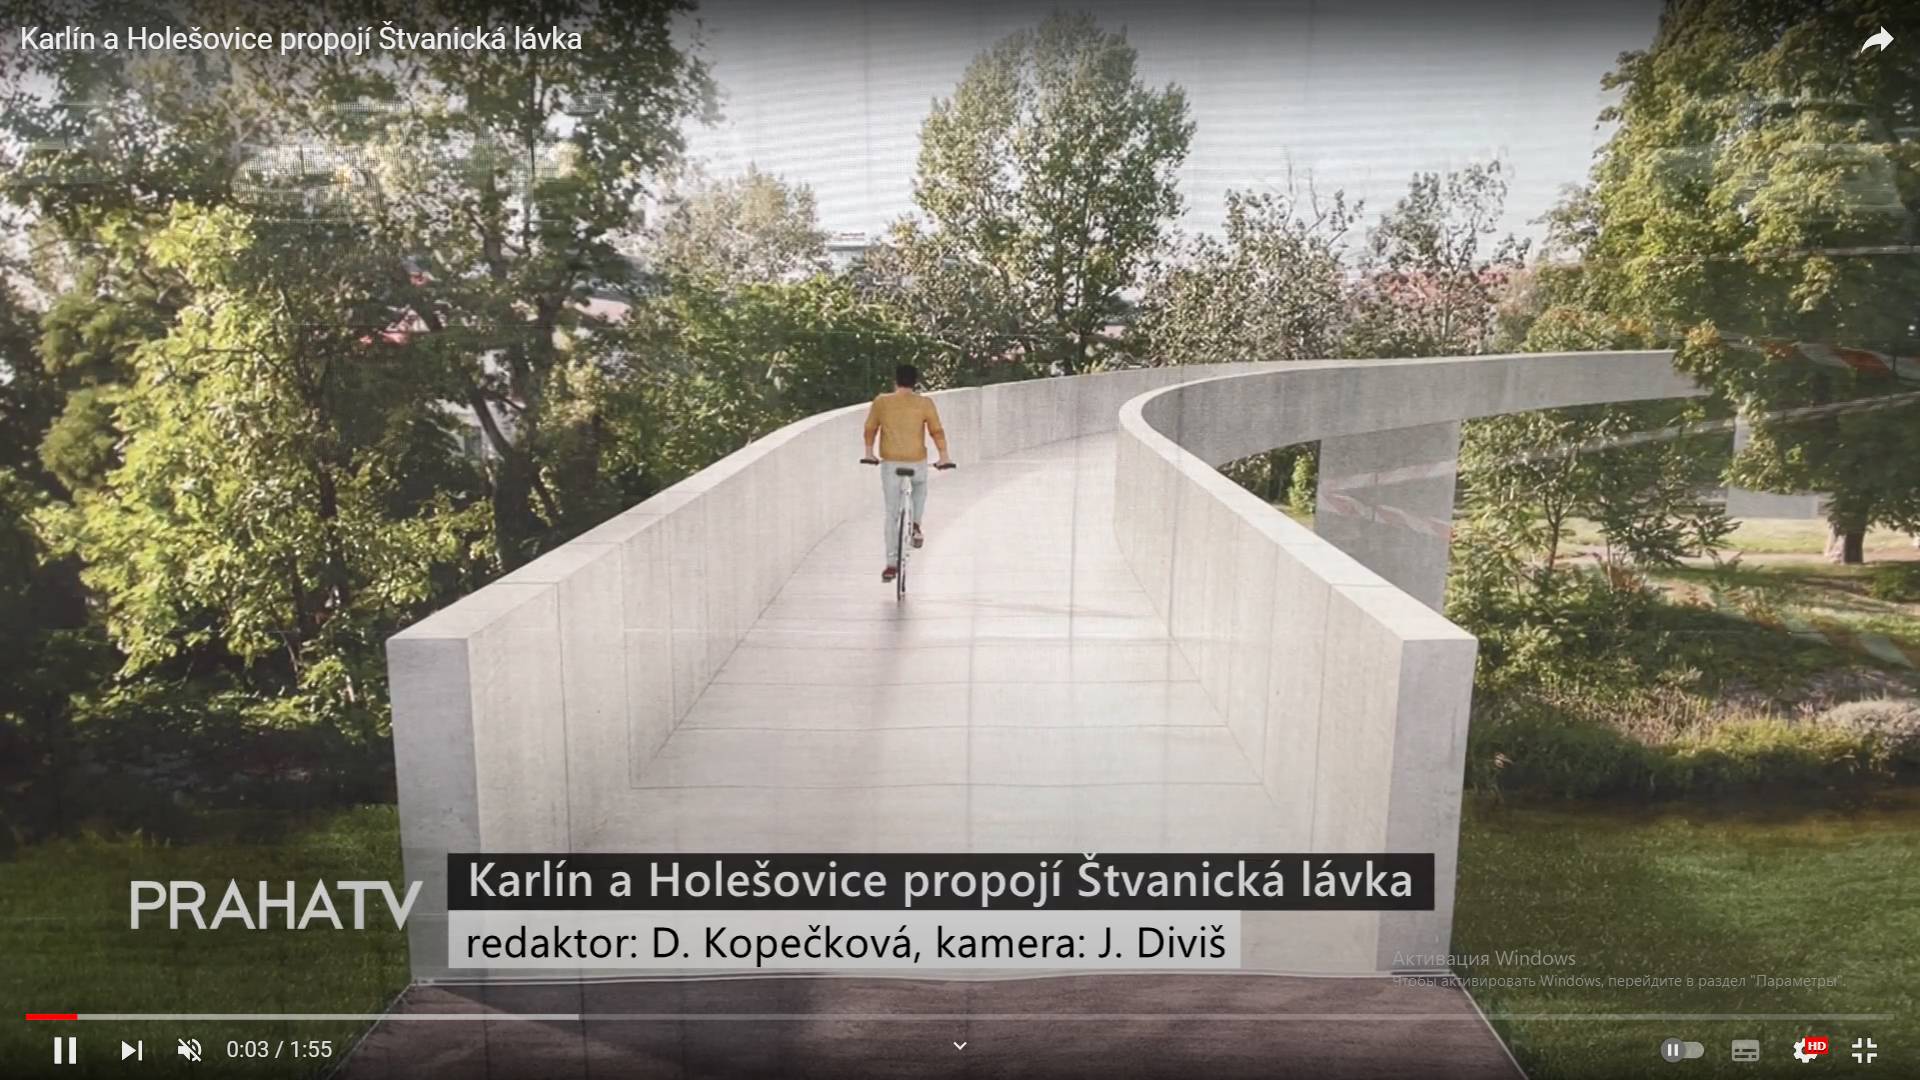 Цитата из видео «Karlín a Holešovice propojí Štvanická lávka» пользователя Městská část Praha 8, youtube.com